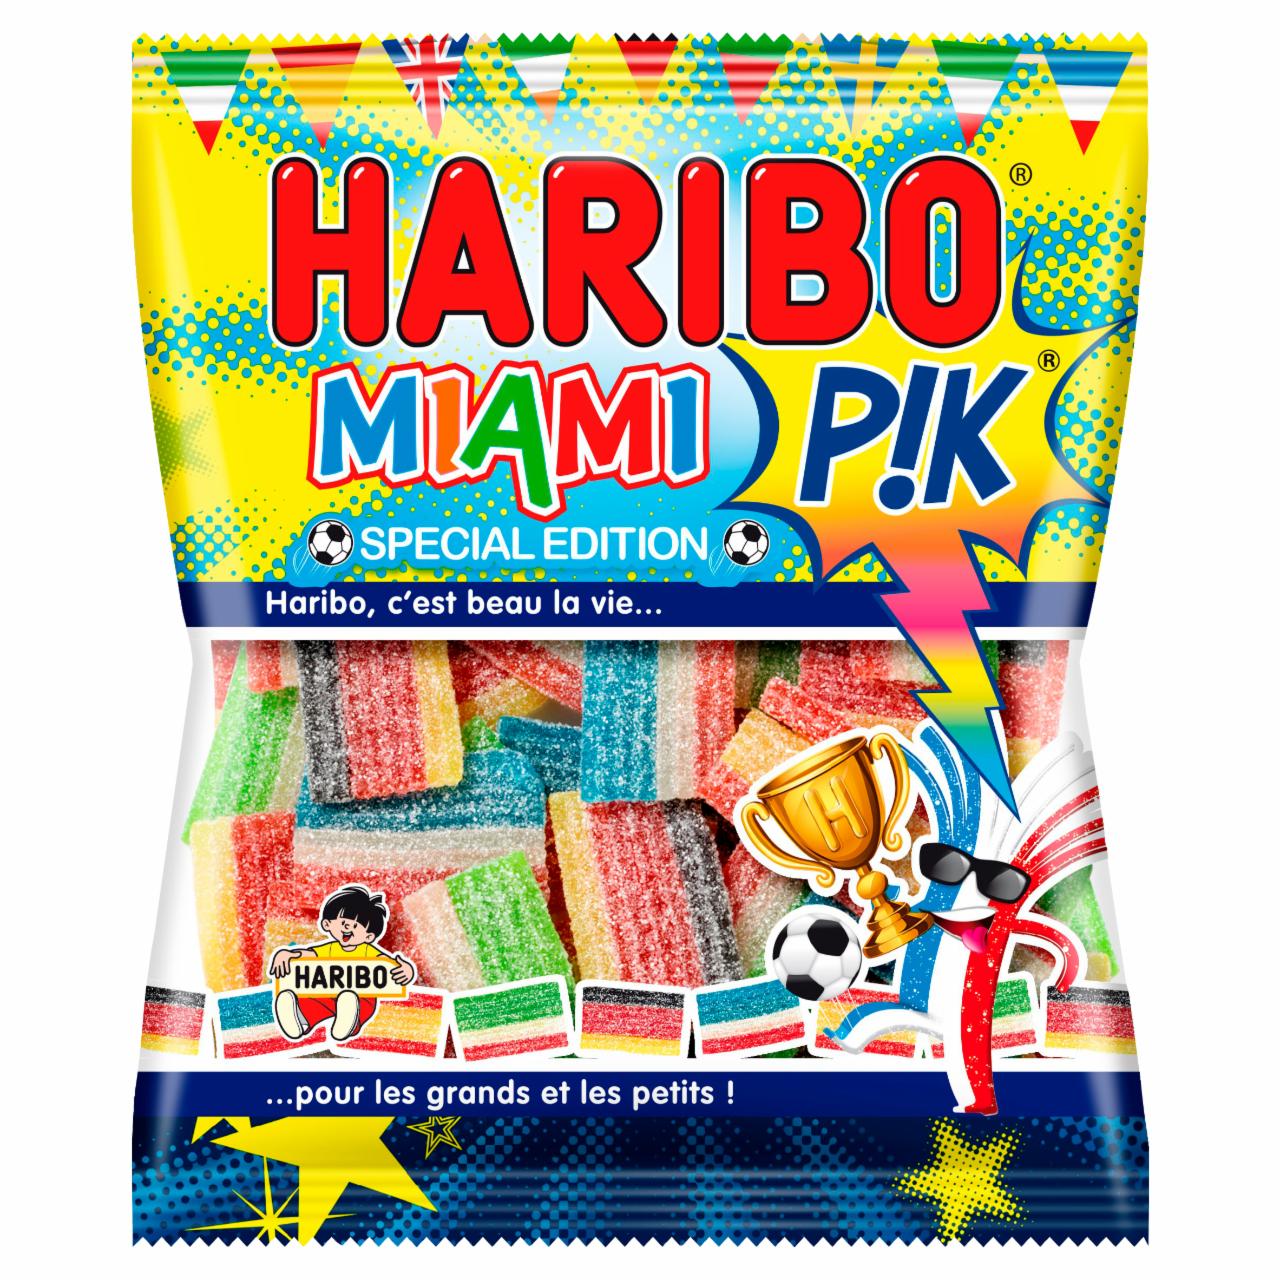 Képek - Haribo Special Edition Miami P!k gyümölcsízű gumicukorka 120 g